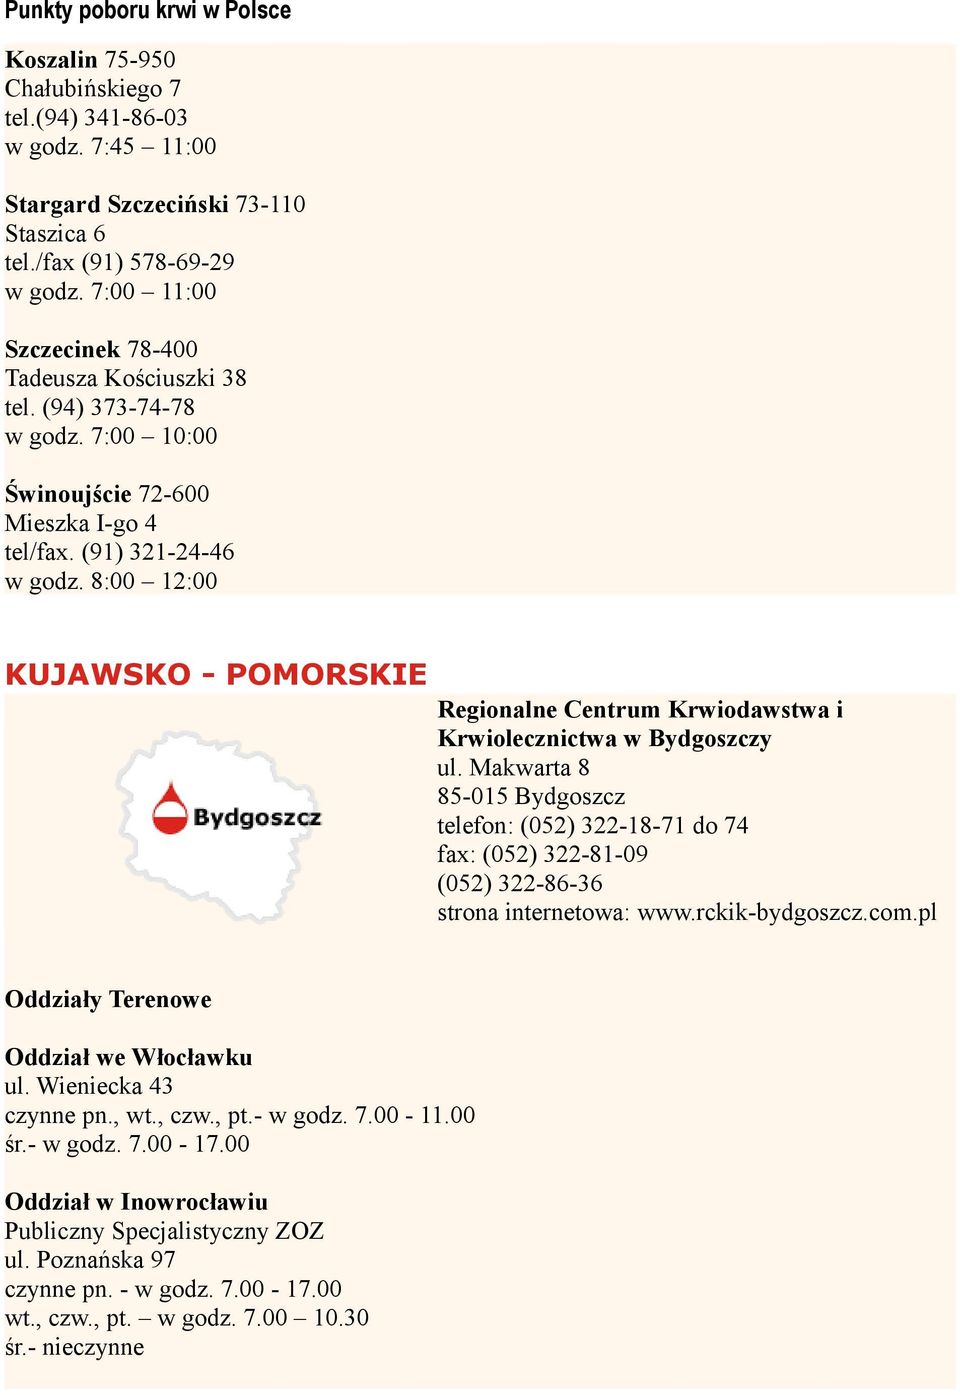 8:00 12:00 KUJAWSKO - POMORSKIE Krwiolecznictwa w Bydgoszczy ul. Makwarta 8 85-015 Bydgoszcz telefon: (052) 322-18-71 do 74 fax: (052) 322-81-09 (052) 322-86-36 strona internetowa: www.